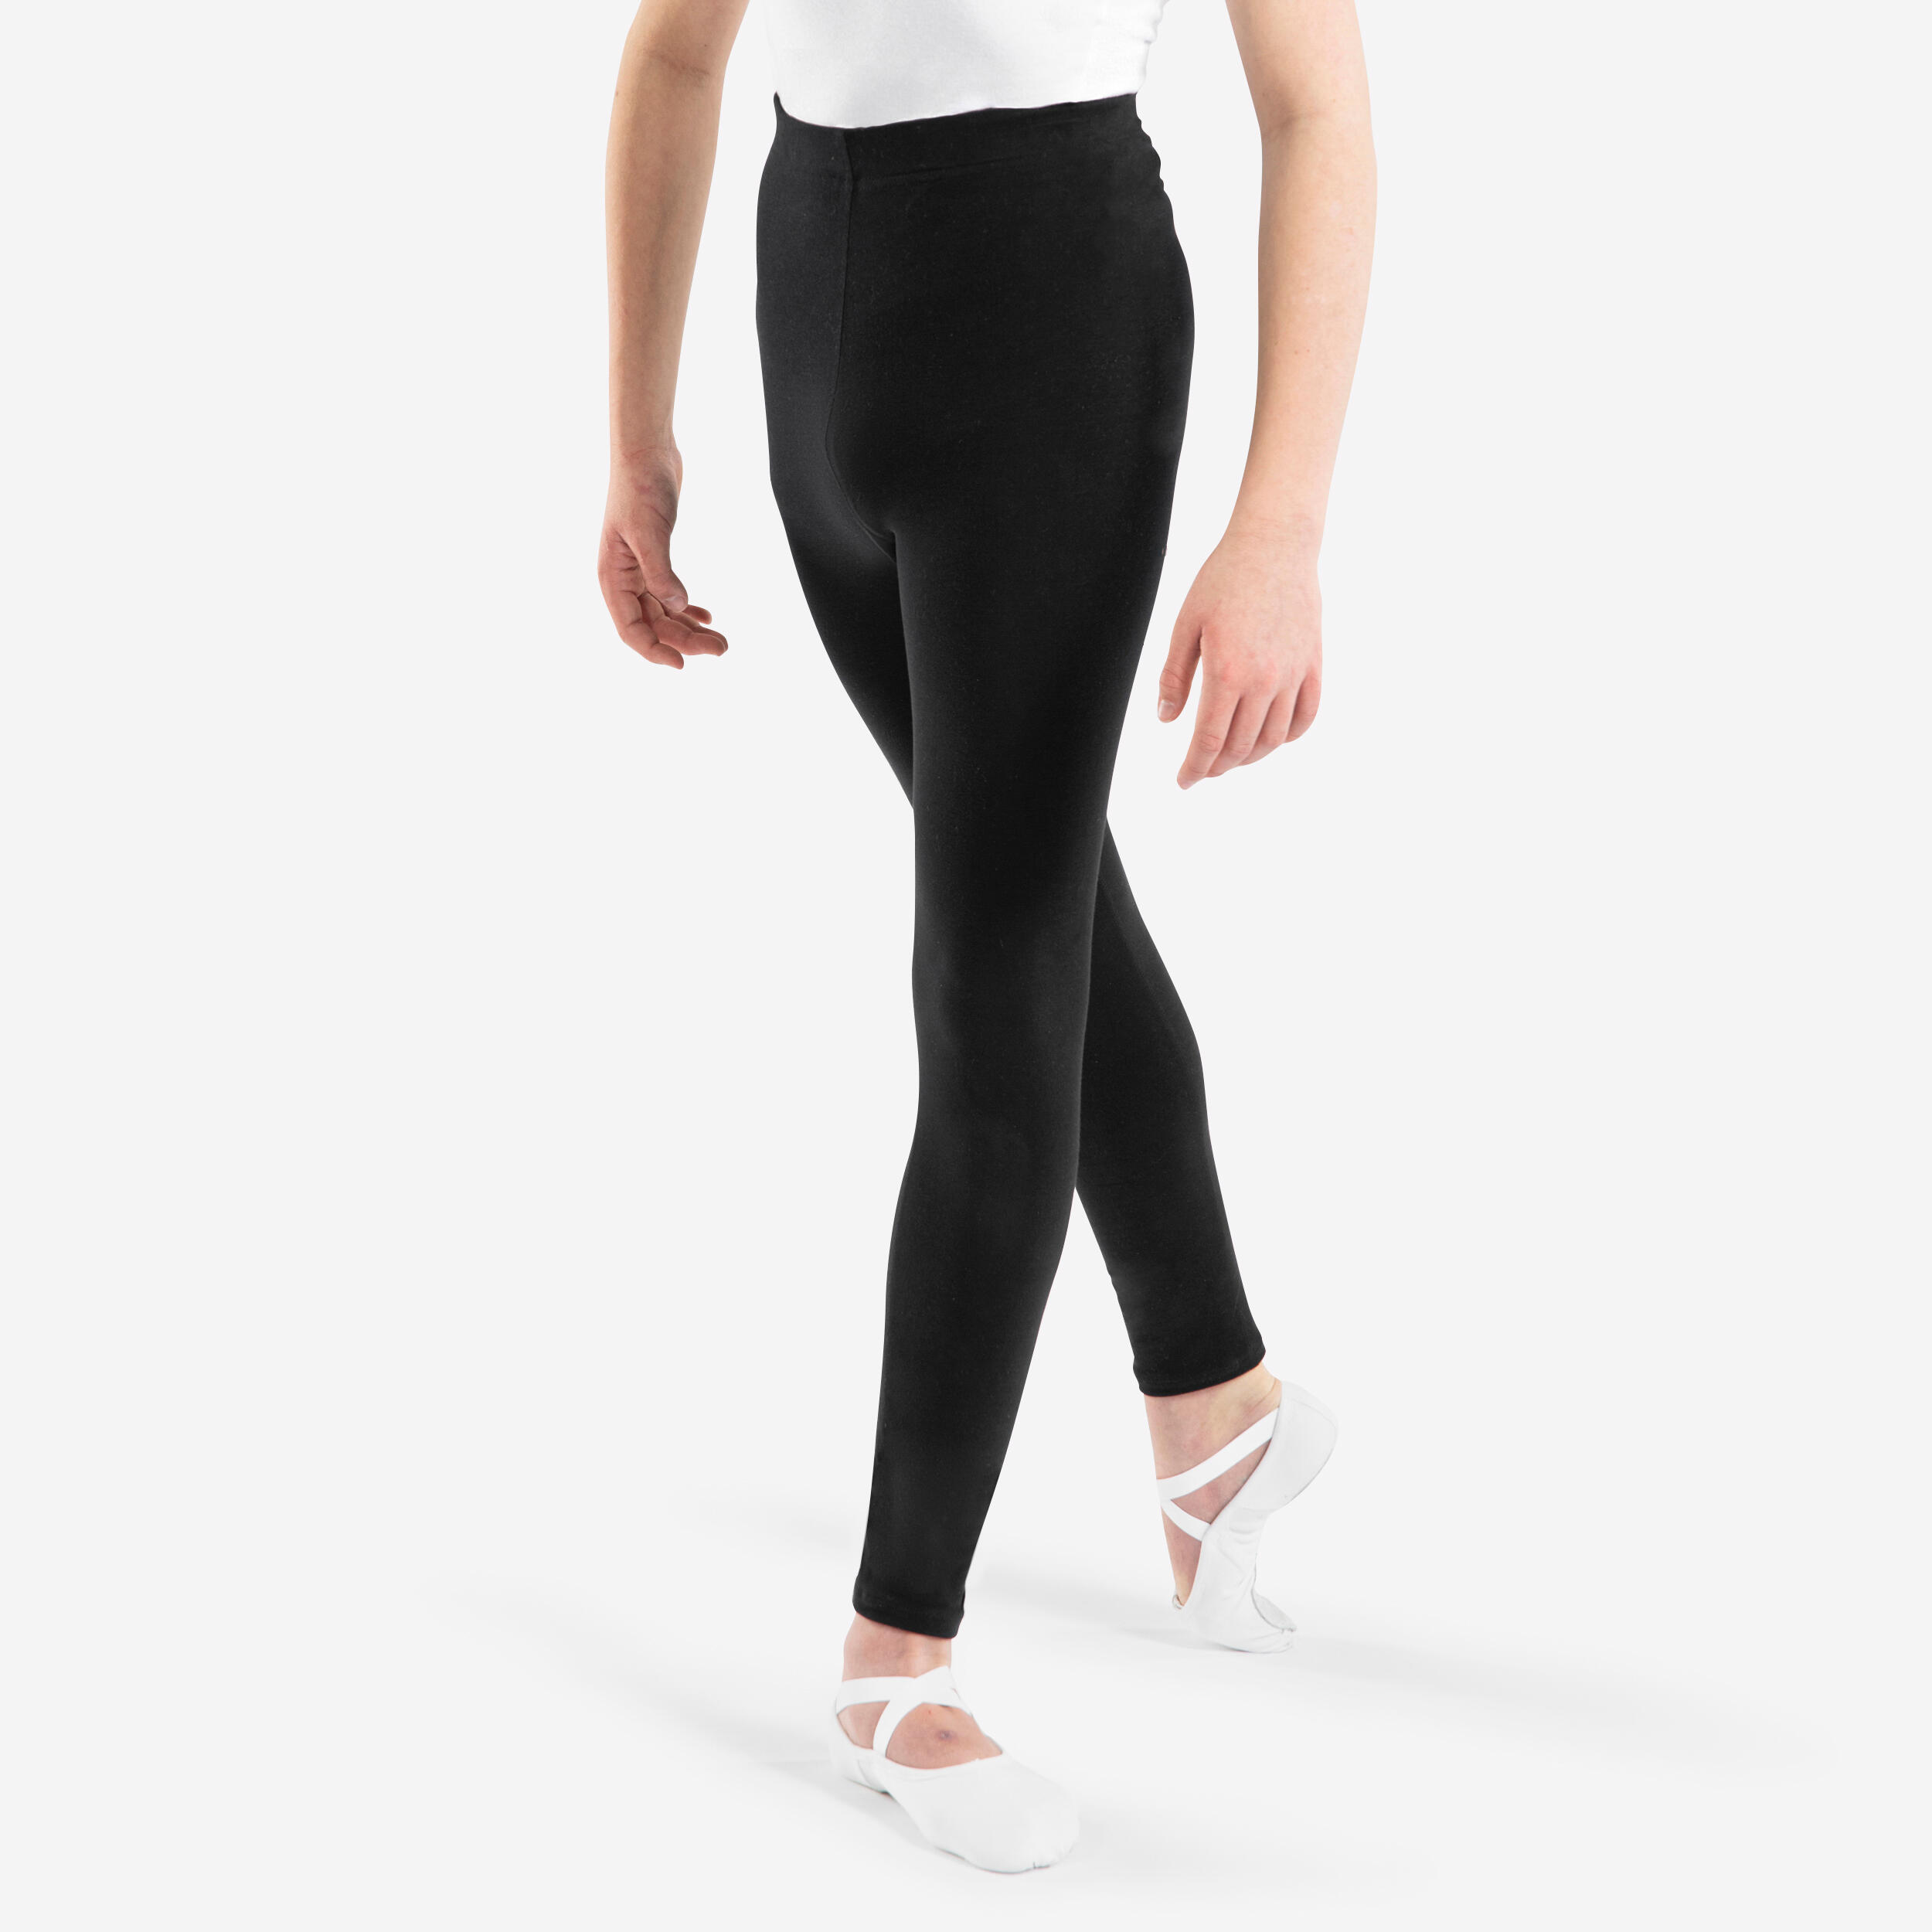 Share 262+ decathlon black leggings latest